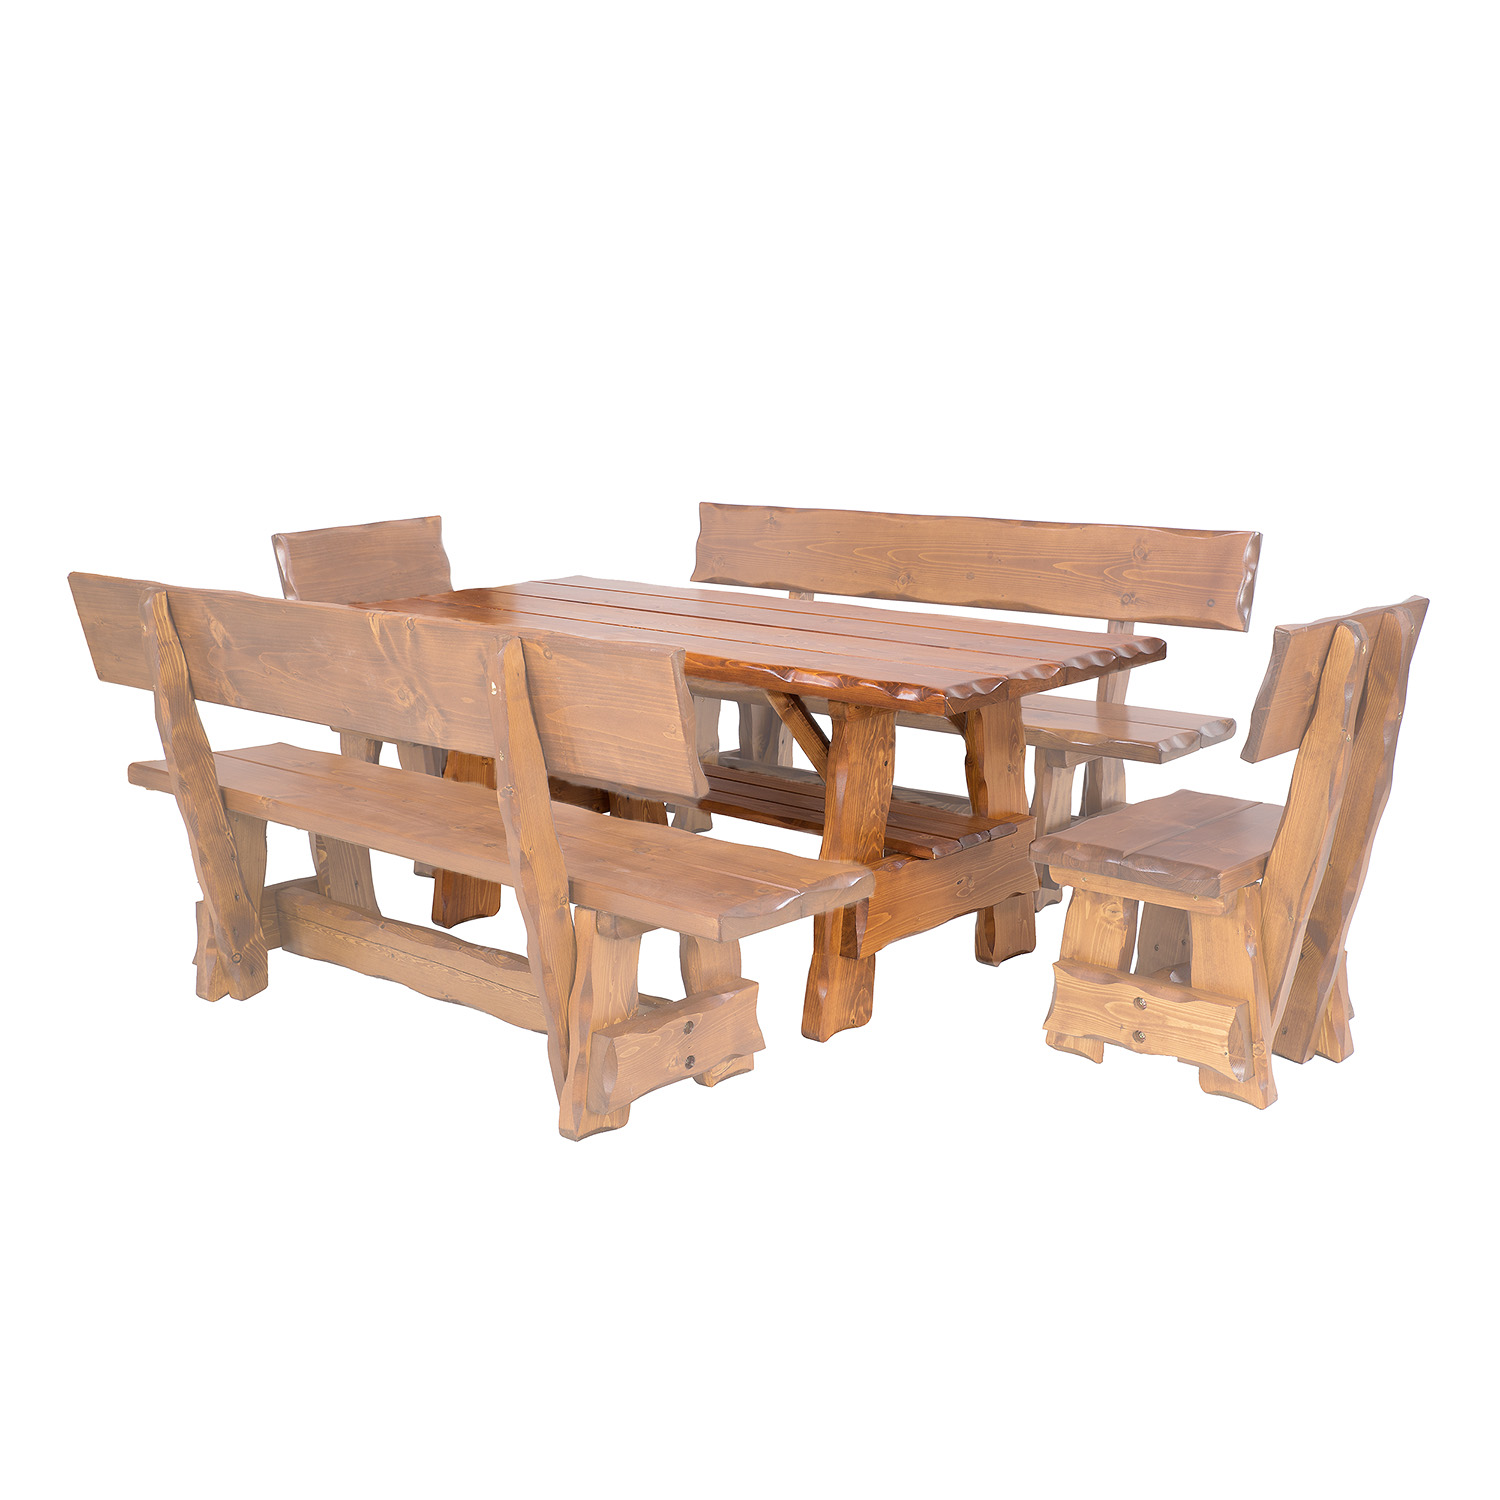 BEN - zahradní stůl ze smrkového dřeva, lakovaný 200x80x83cm - Ořech lak